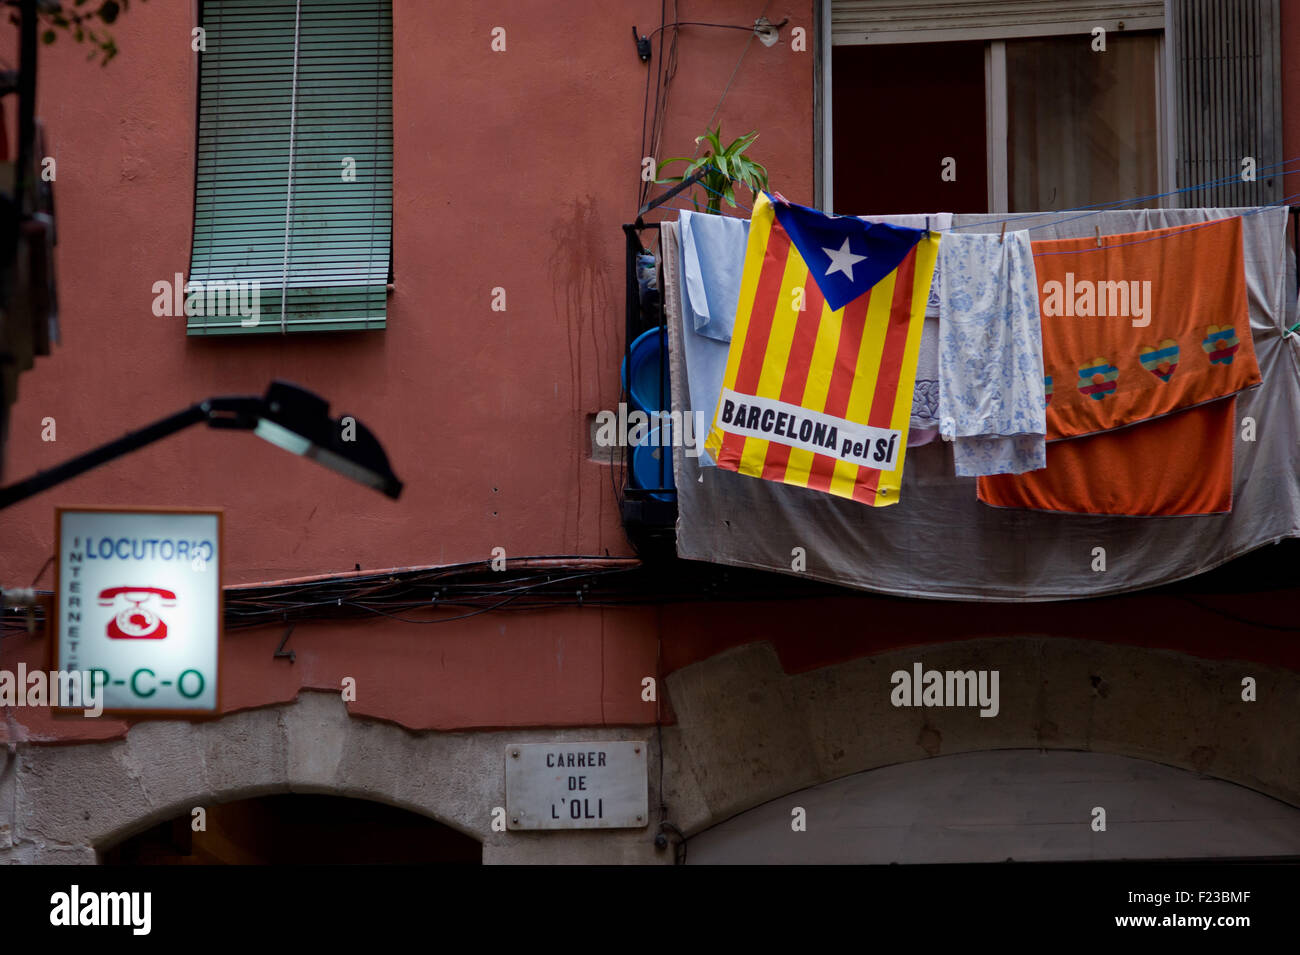 Barcelone, Catalogne, Espagne. 10 Sep, 2015. Un ESTELADA Drapeau indépendantiste catalan () se bloque à partir d'un balcon à Barcelone un jour avant la célébration de La Diada Catalane (Journée nationale) le 10 septembre 2015. Les derniers sondages donnent la majorité absolue à l'indépendance de parties (Junts Pel Si et CUP) qui sera au CatalÃ¡n les élections régionales du 27 septembre prochain. © Jordi Boixareu/ZUMA/Alamy Fil Live News Banque D'Images